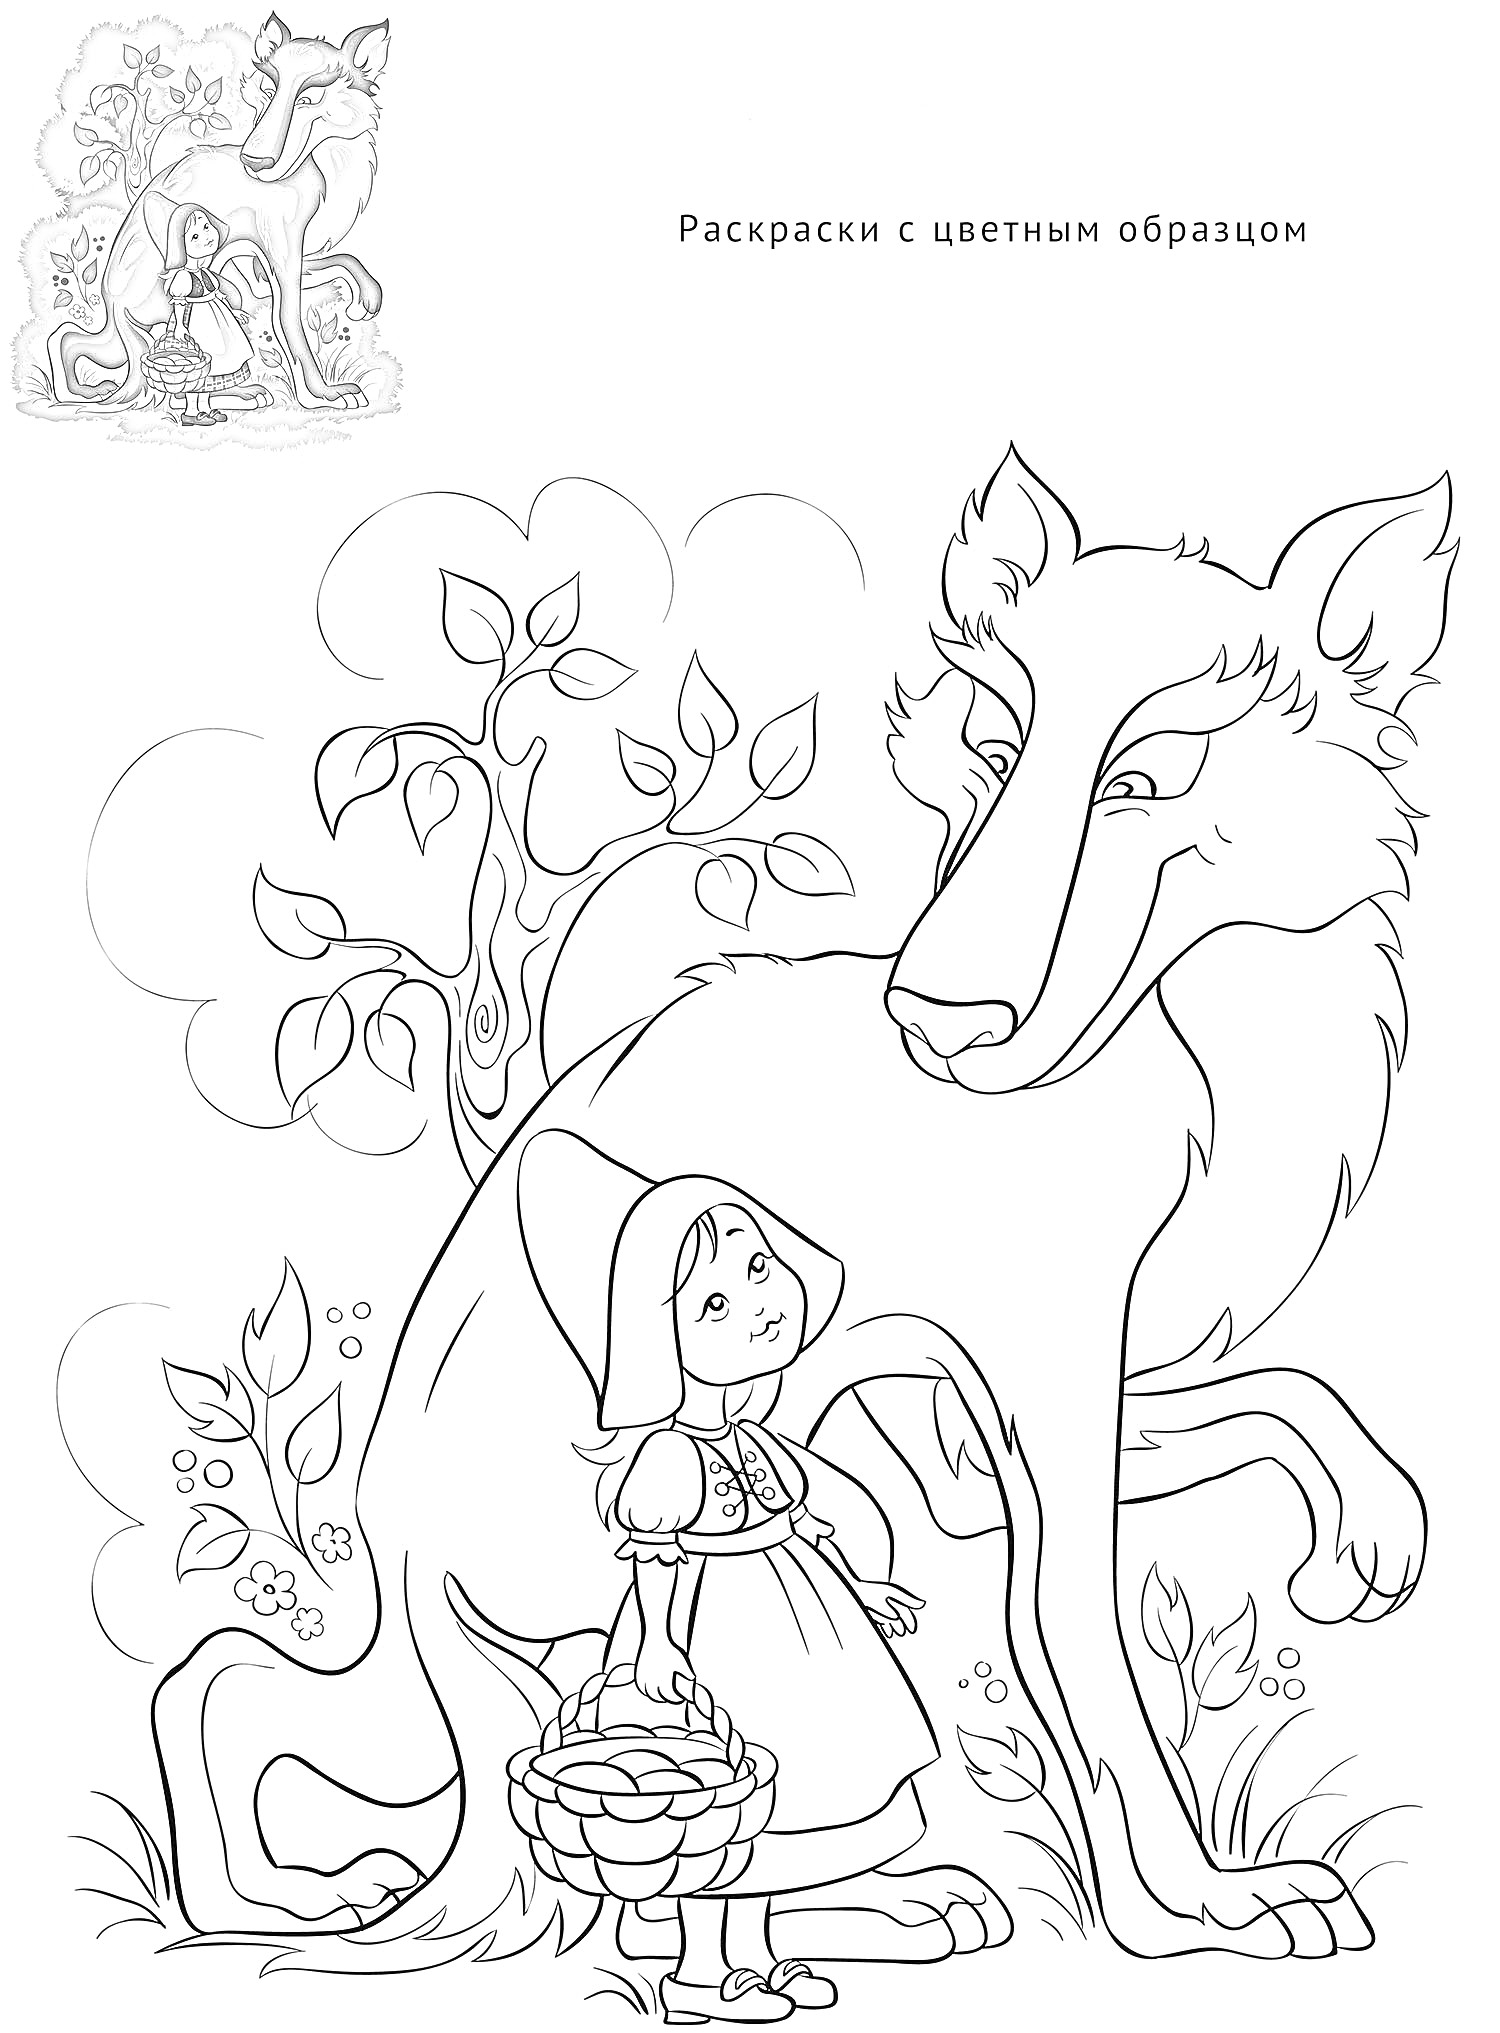 Раскраска Дева с корзиной и большой волк под деревом